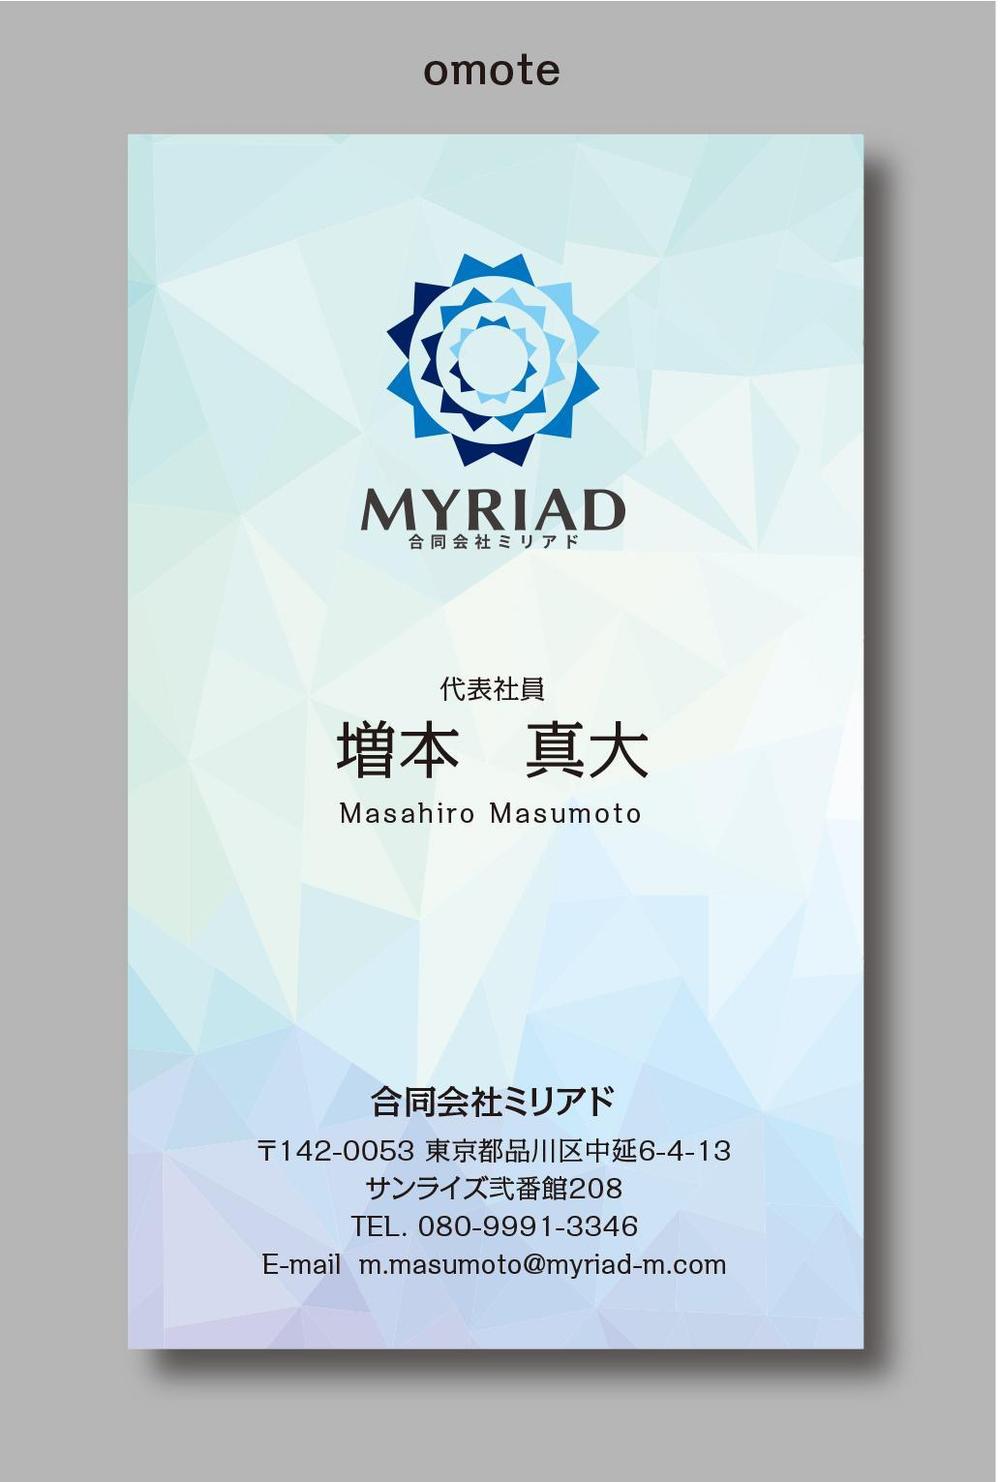 myriad05.jpg